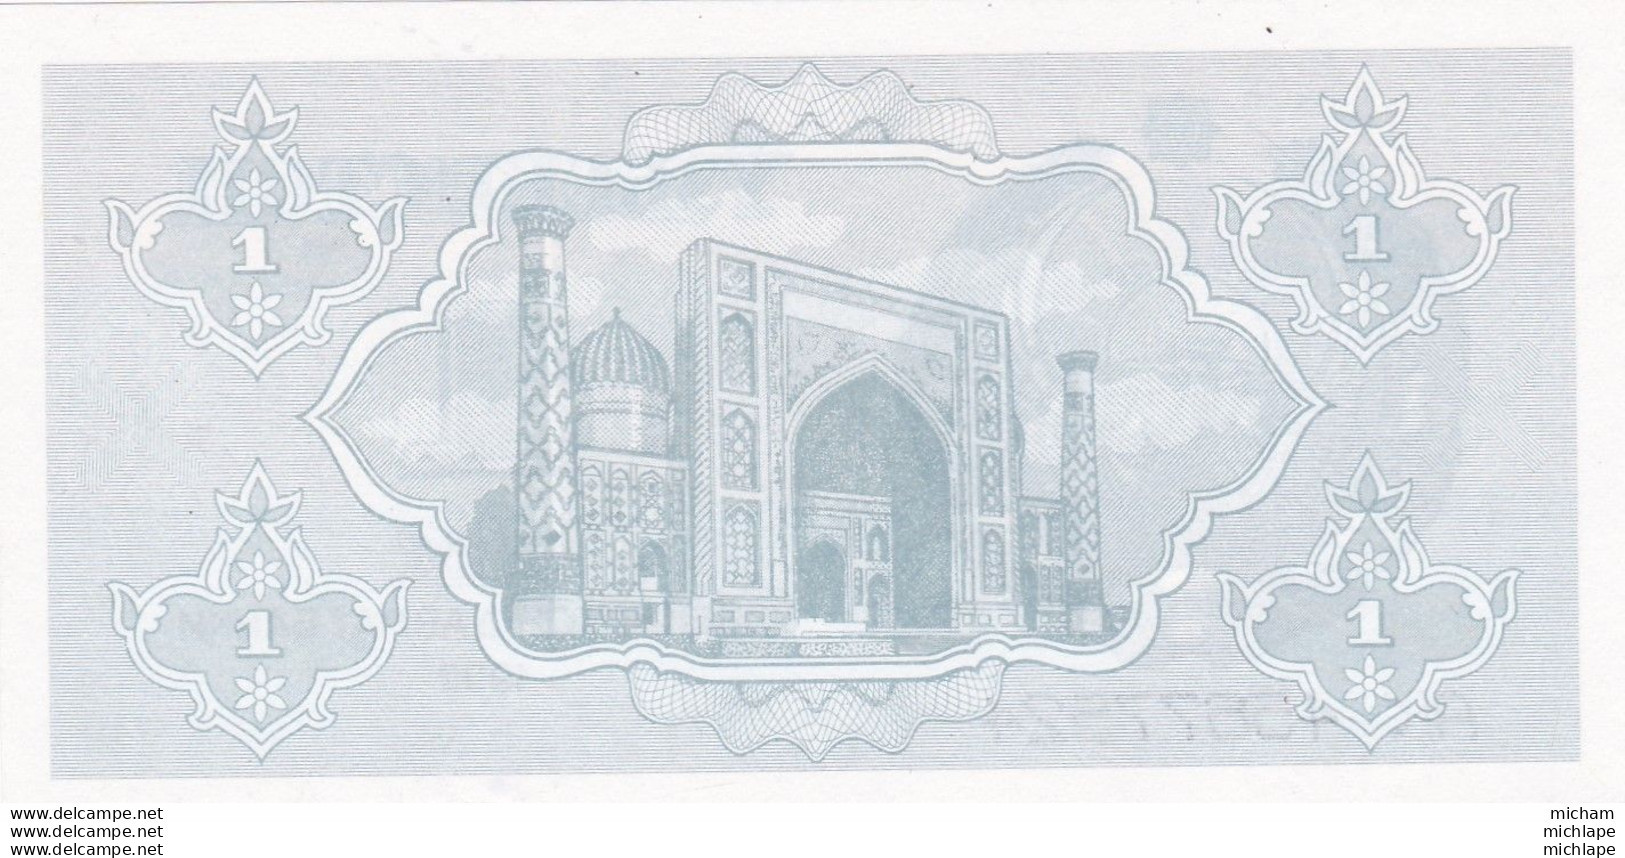 Billet Neuf  Ouzbékistan 1992 - 1 Cym - Uzbekistan